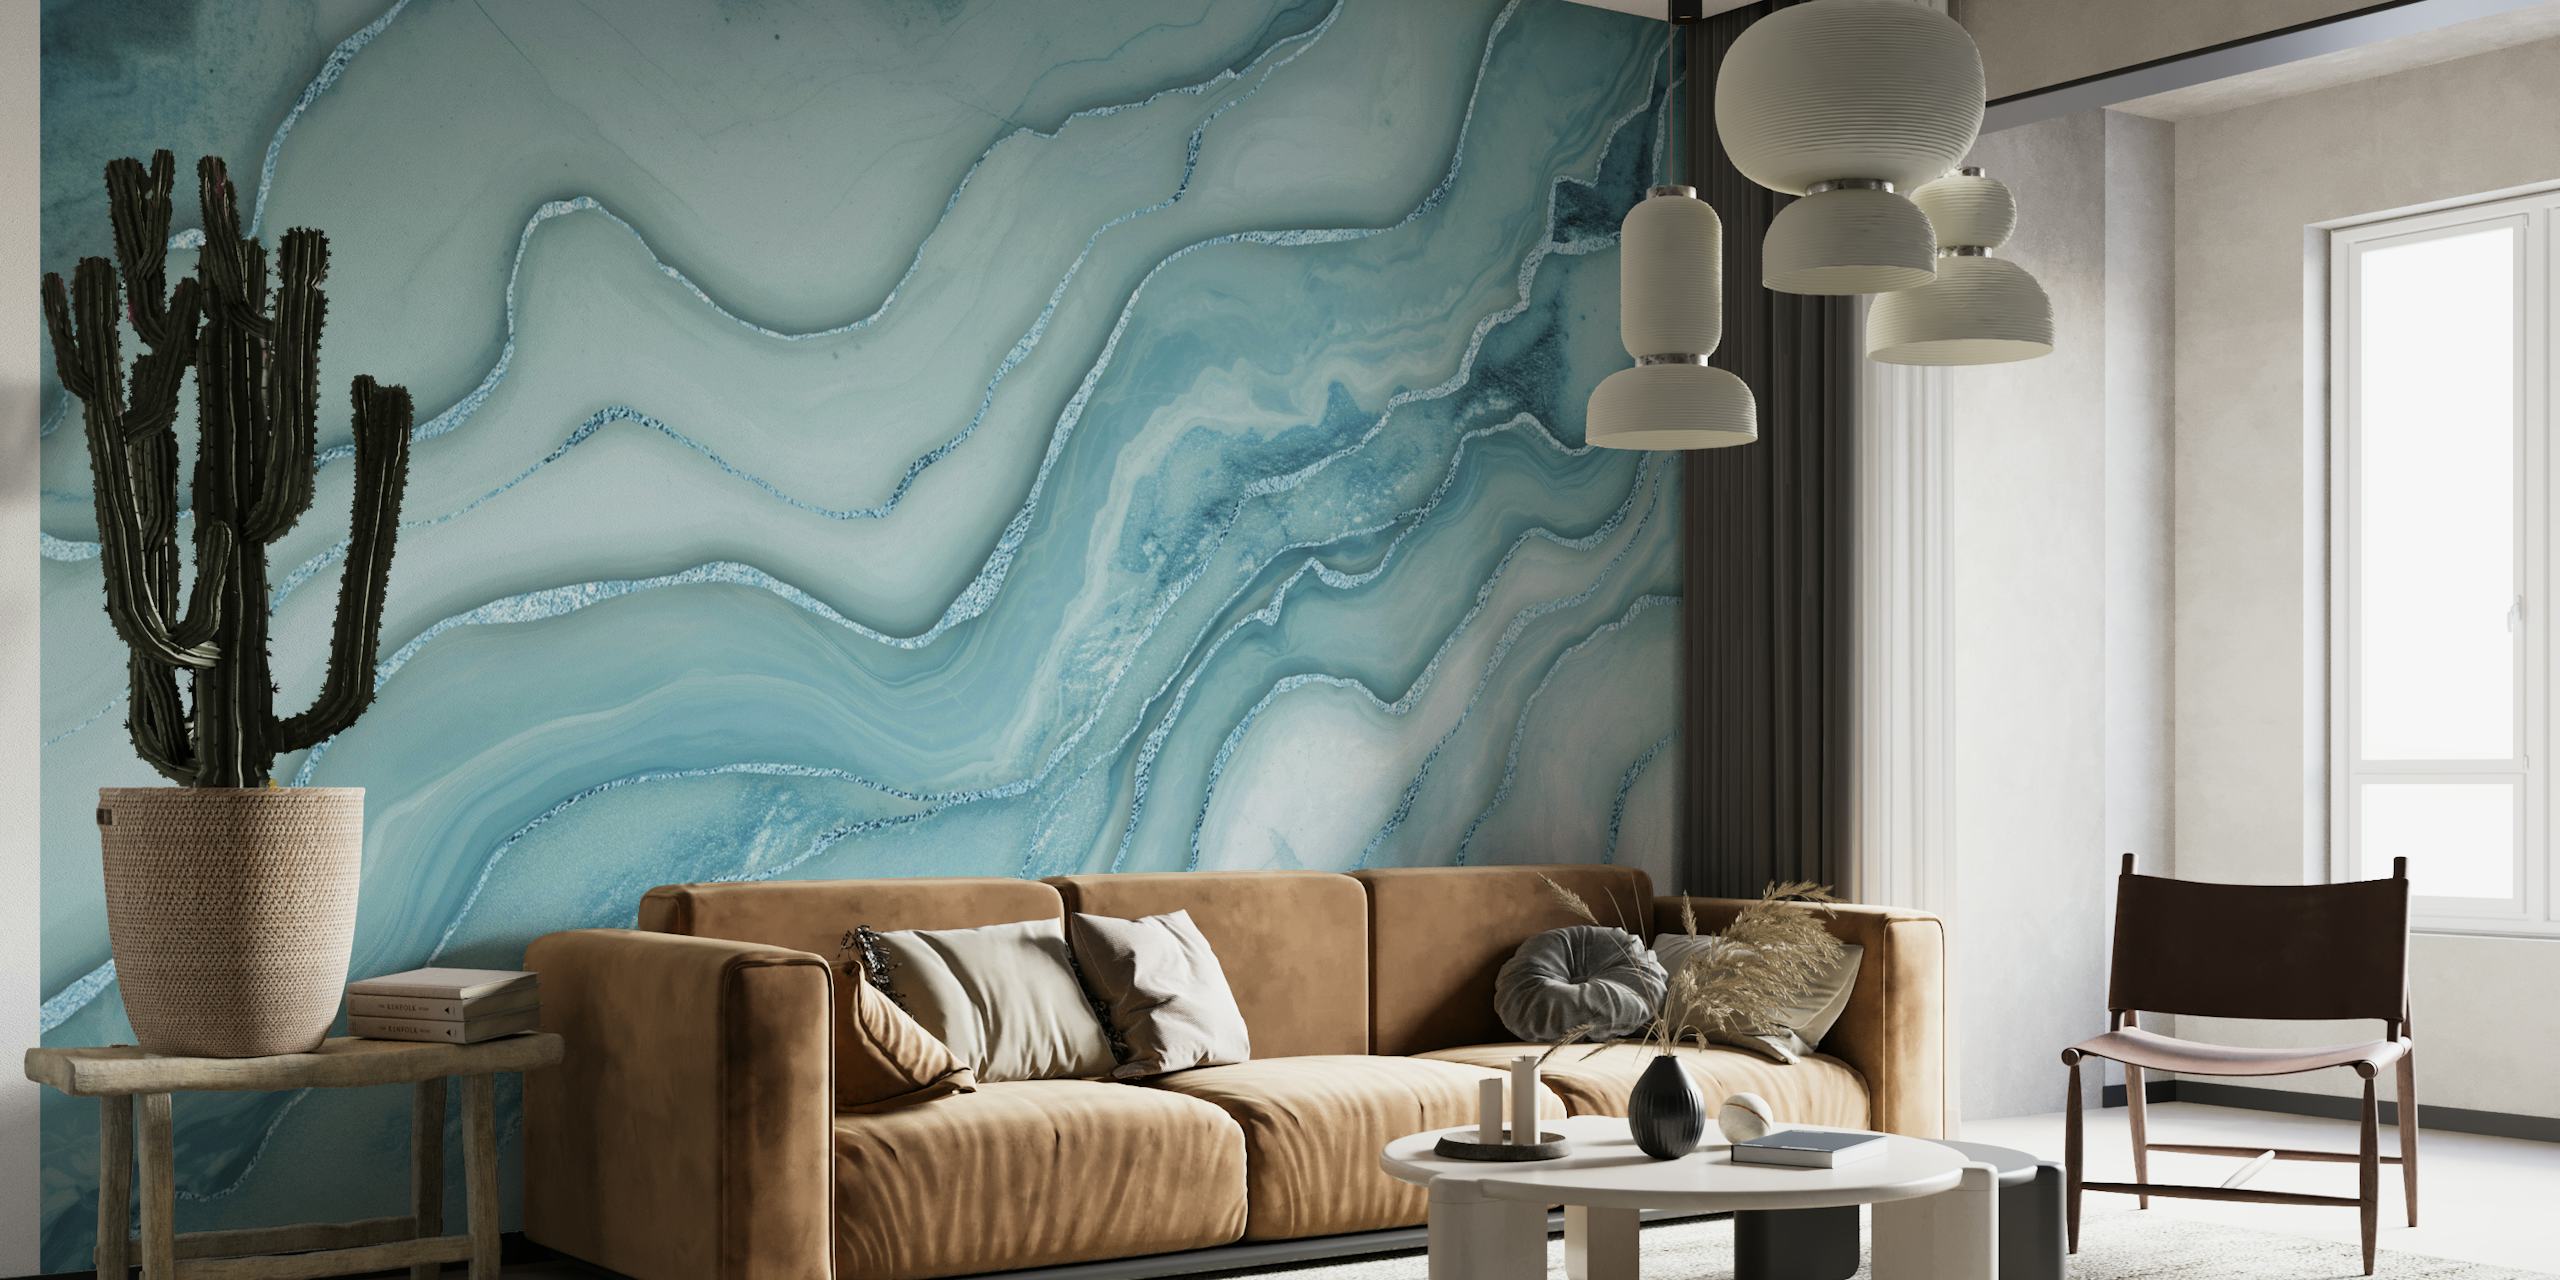 Papier peint mural à motifs de marbre bleu aqua avec des accents gris tourbillonnants créant une atmosphère luxueuse et sereine.